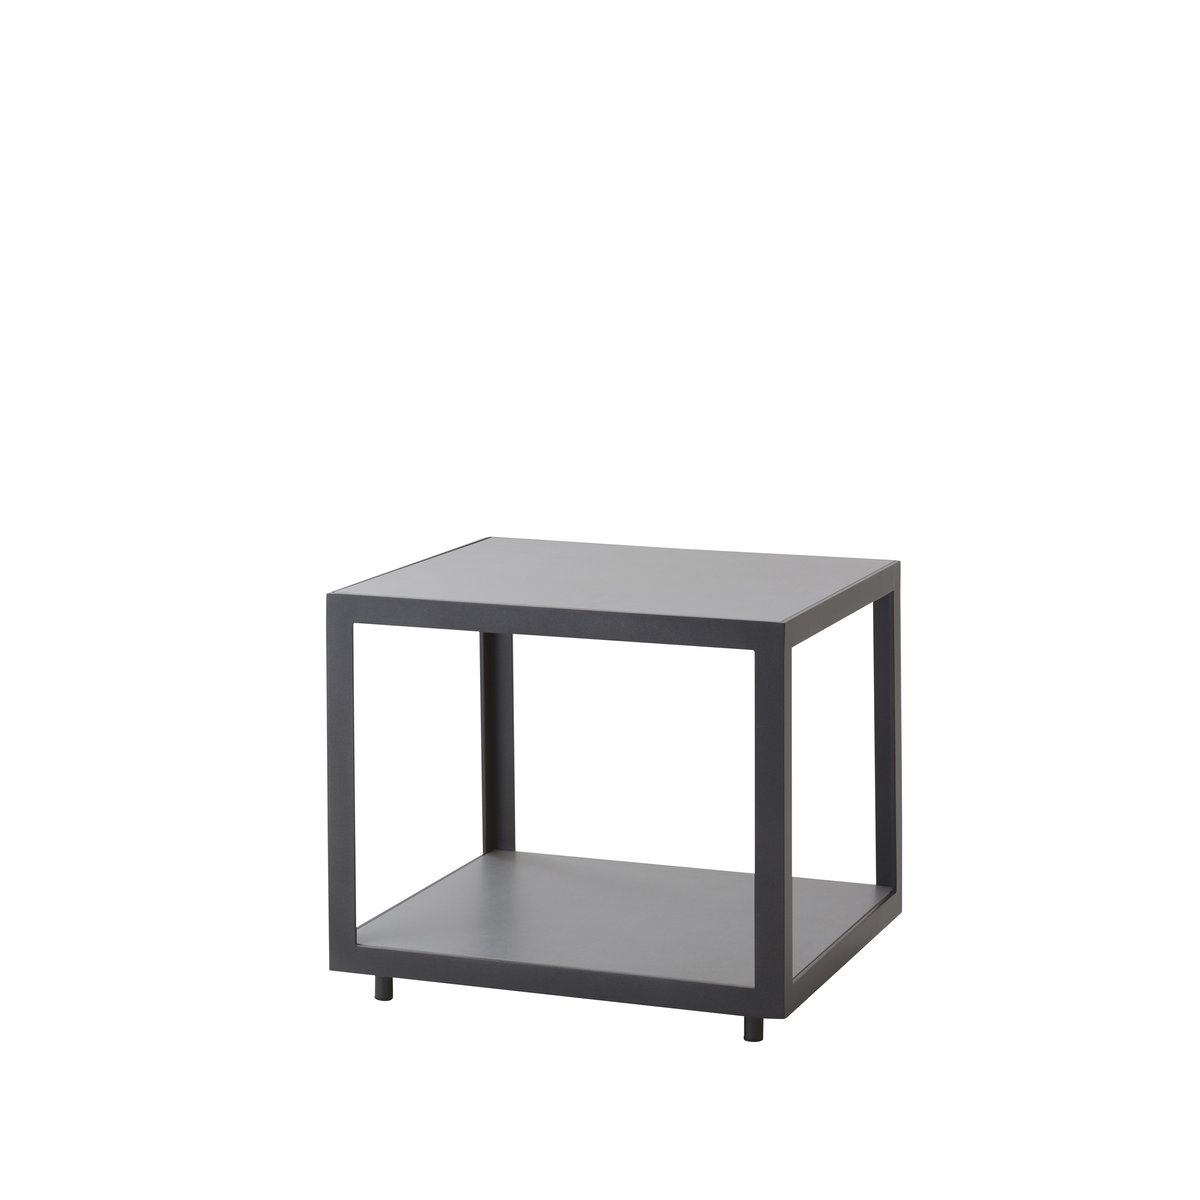 cane-line table d'appoint level light grey céramique-lave gris